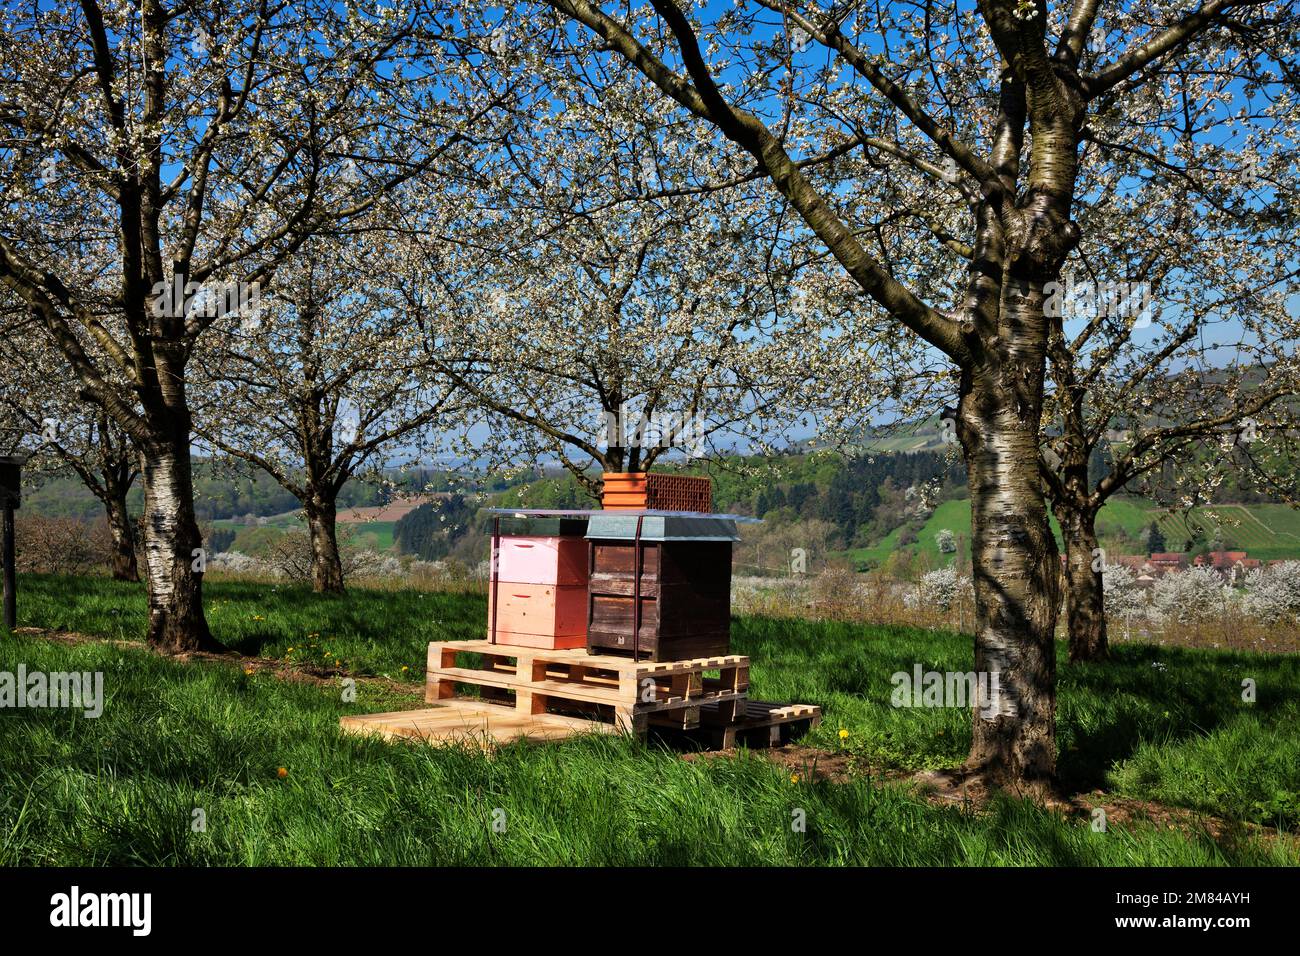 Bienenstöcke unter blühenden Kirschbäumen, Obereggenen, Markgräflerland, Schwarzwald, Baden-Württemberg, Deutschland Stock Photo